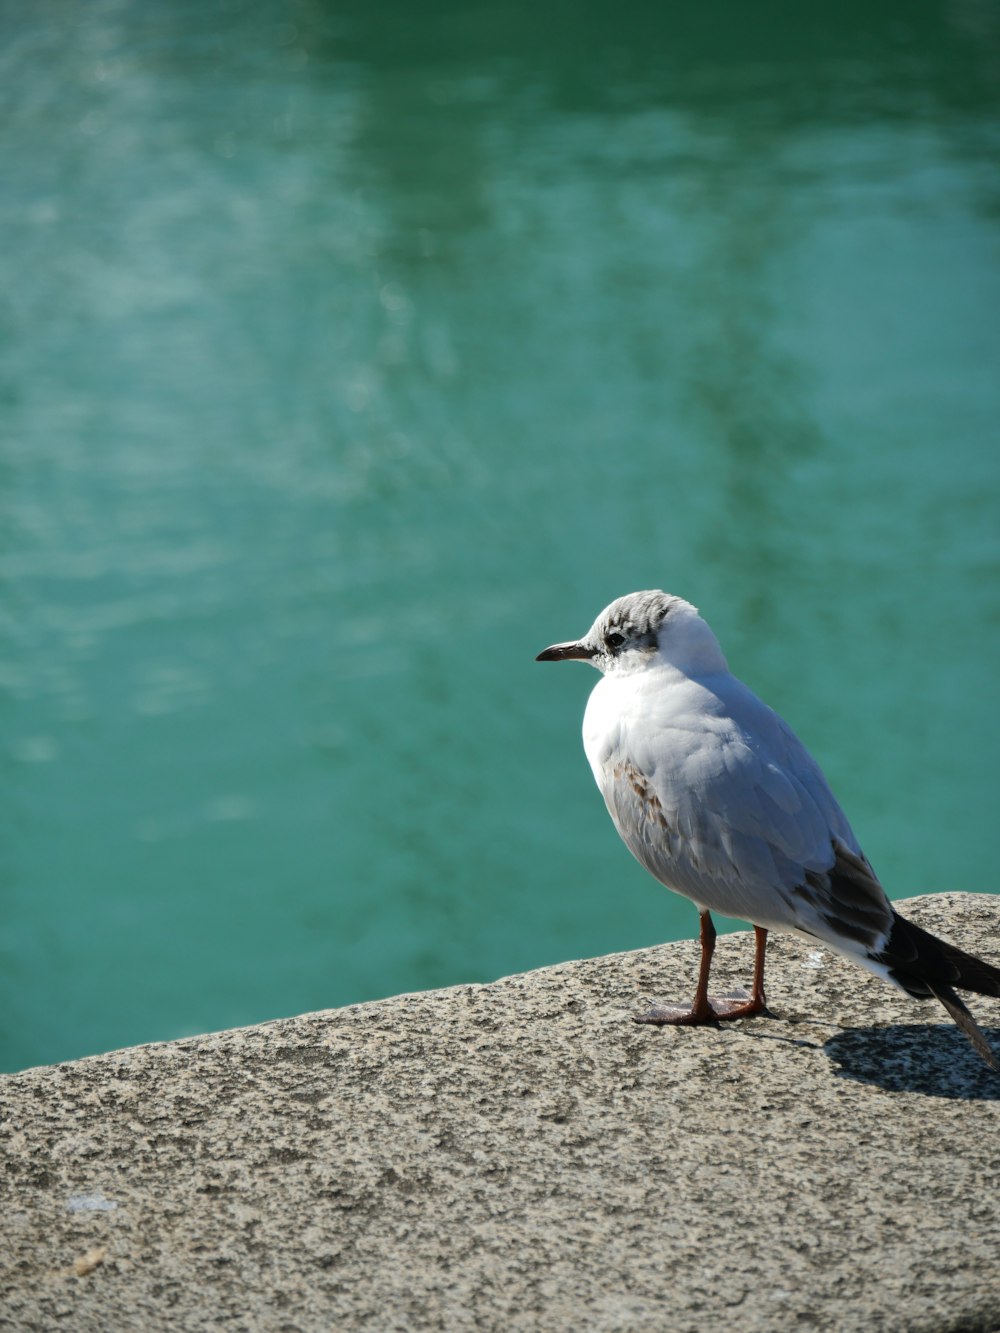 日中の水域近くの灰色のコンクリート表面に白と灰色の鳥